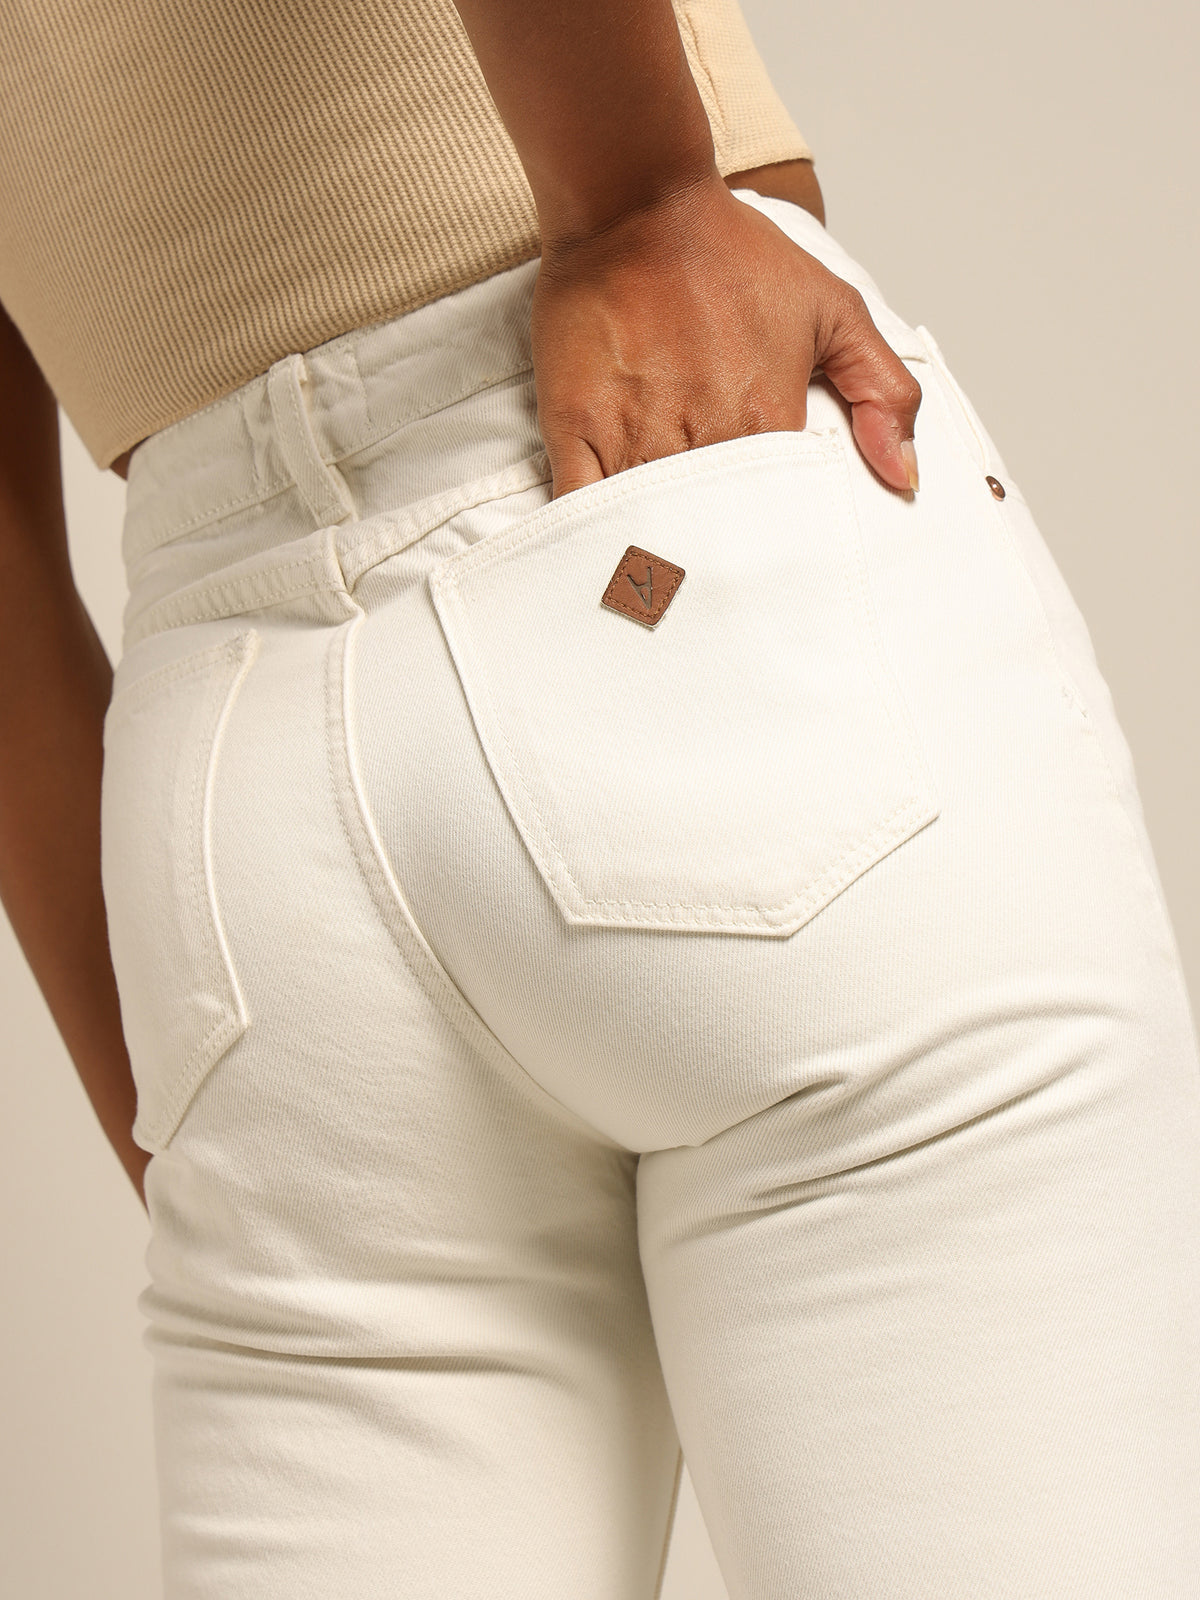 A 94 Petite High Slim Jean in White Fade